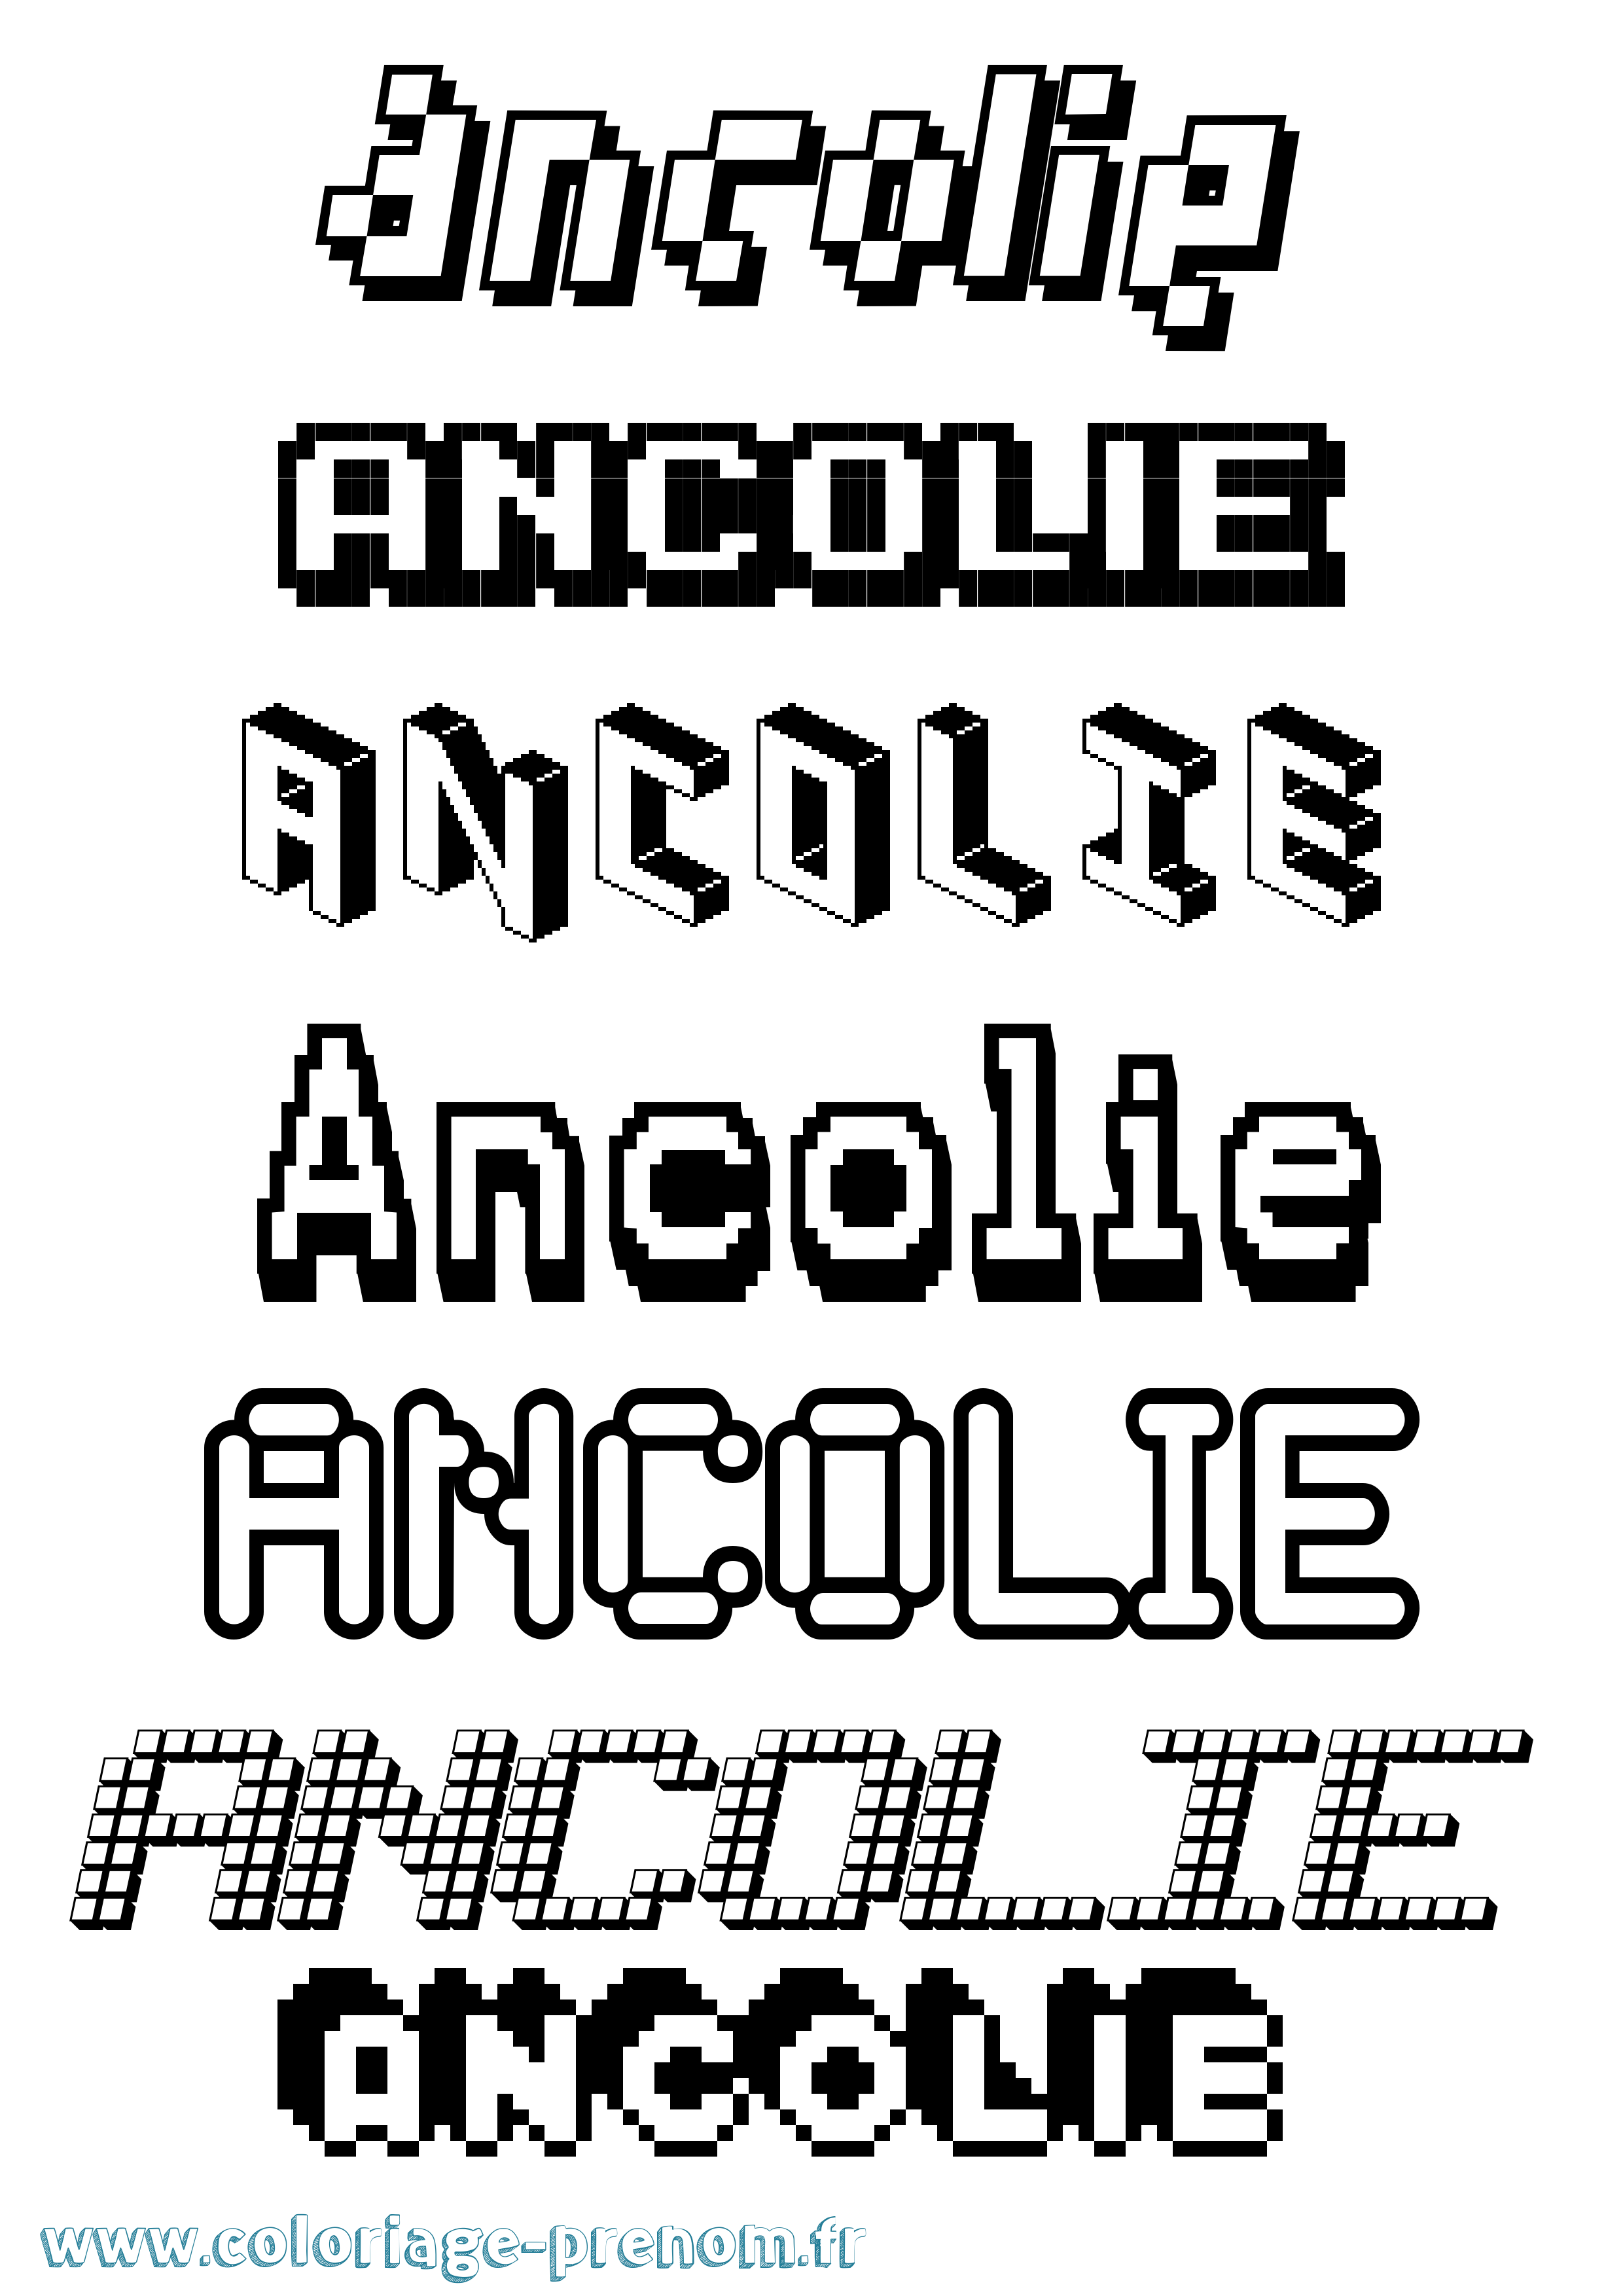 Coloriage prénom Ancolie Pixel